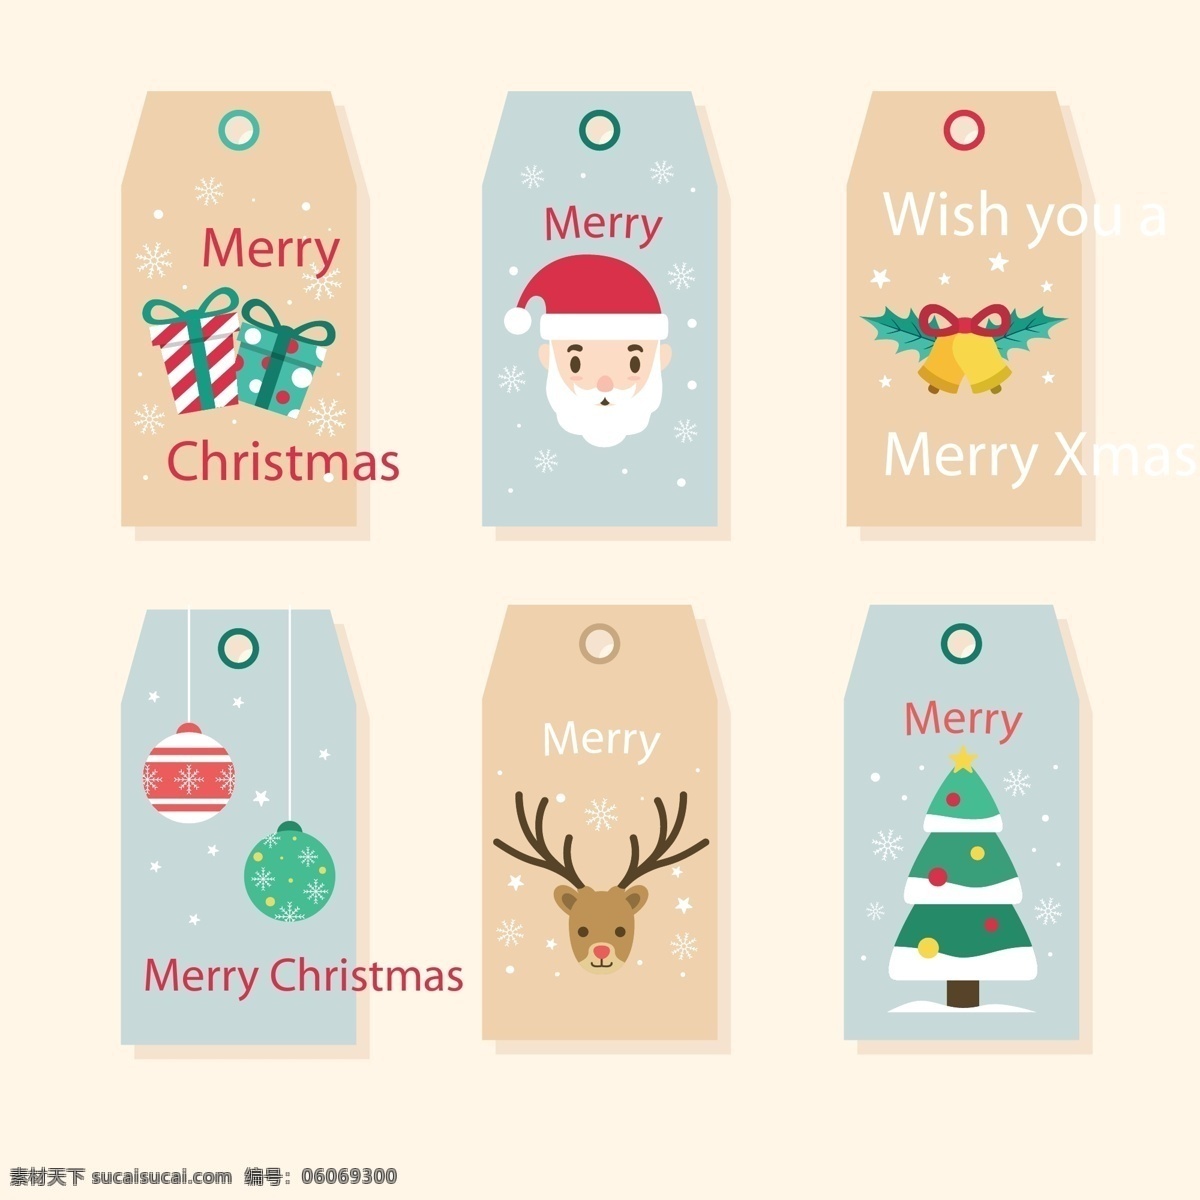 彩色 可爱 圣诞节 标签 礼物 圣诞树 矢量素材 圣诞老人 驯鹿 铃铛